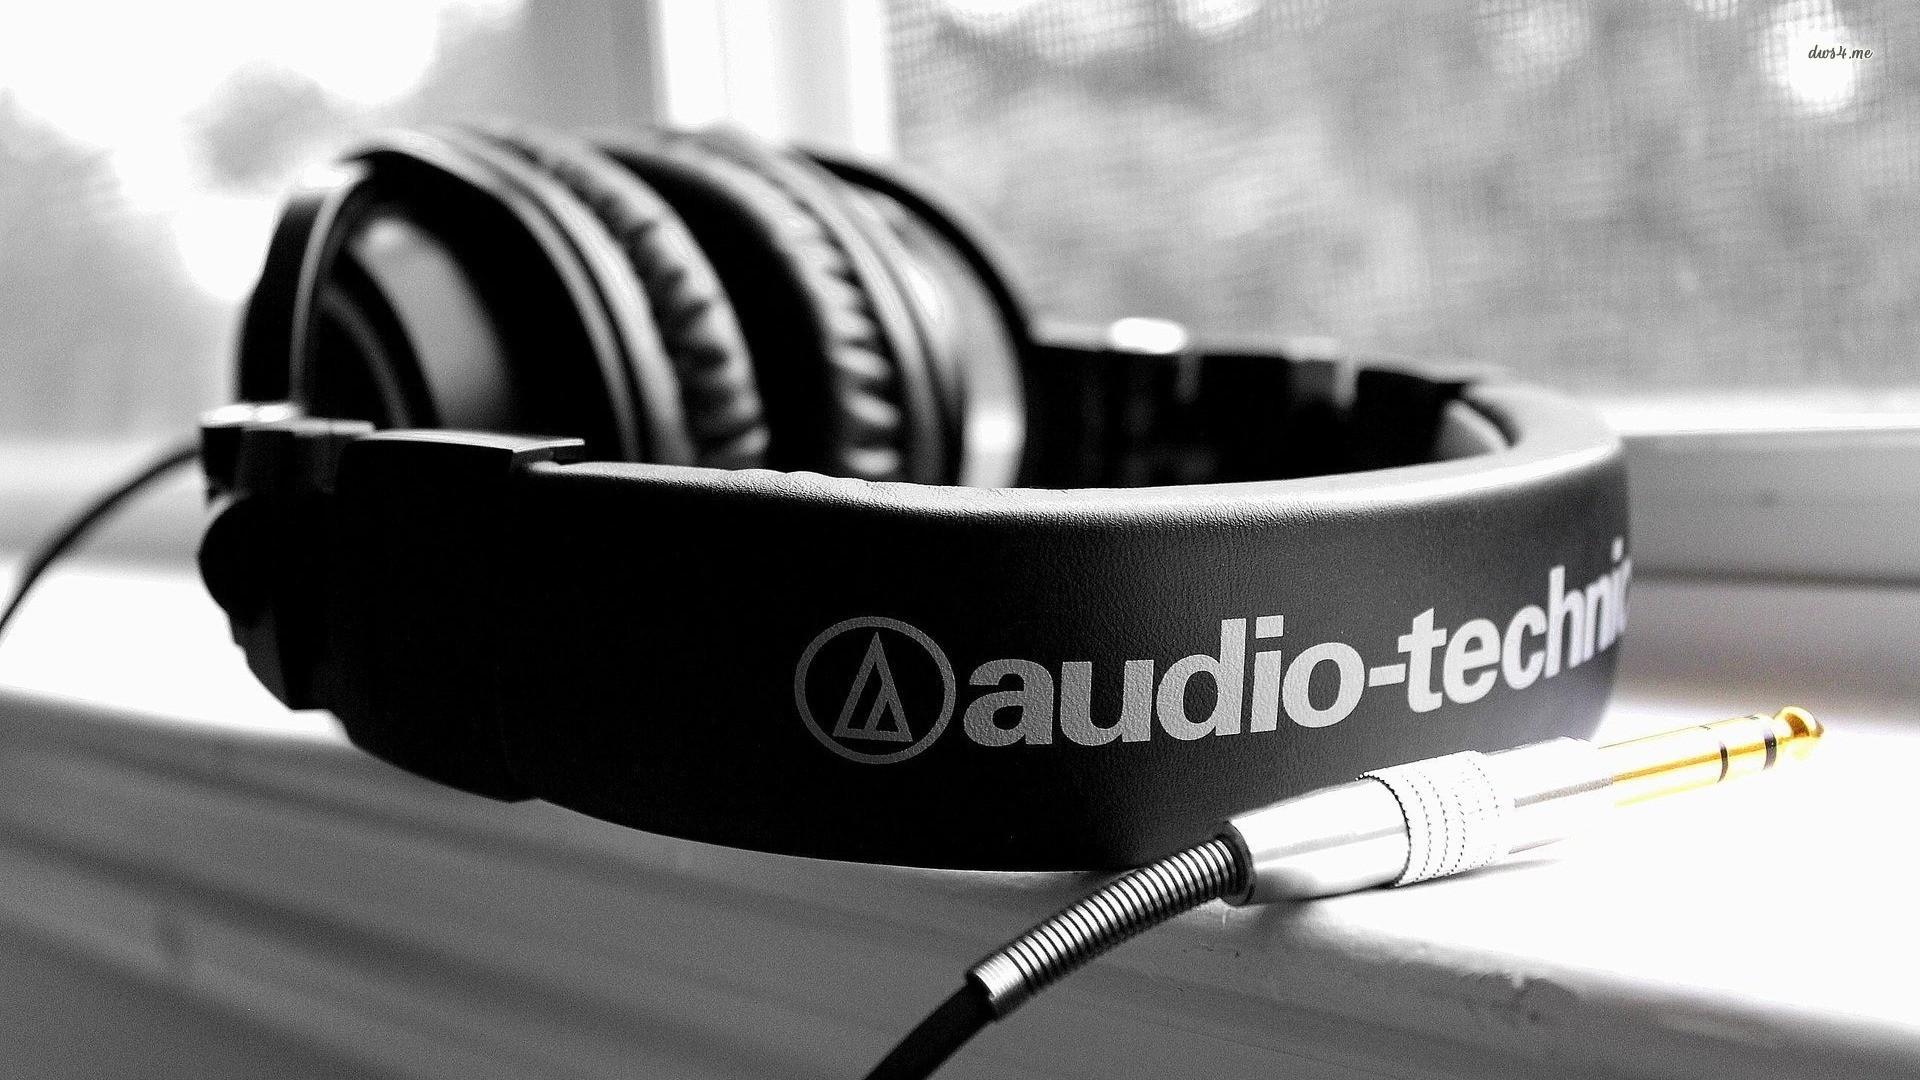 headphones, Audio technica Wallpaper HD / Desktop and Mobile Background